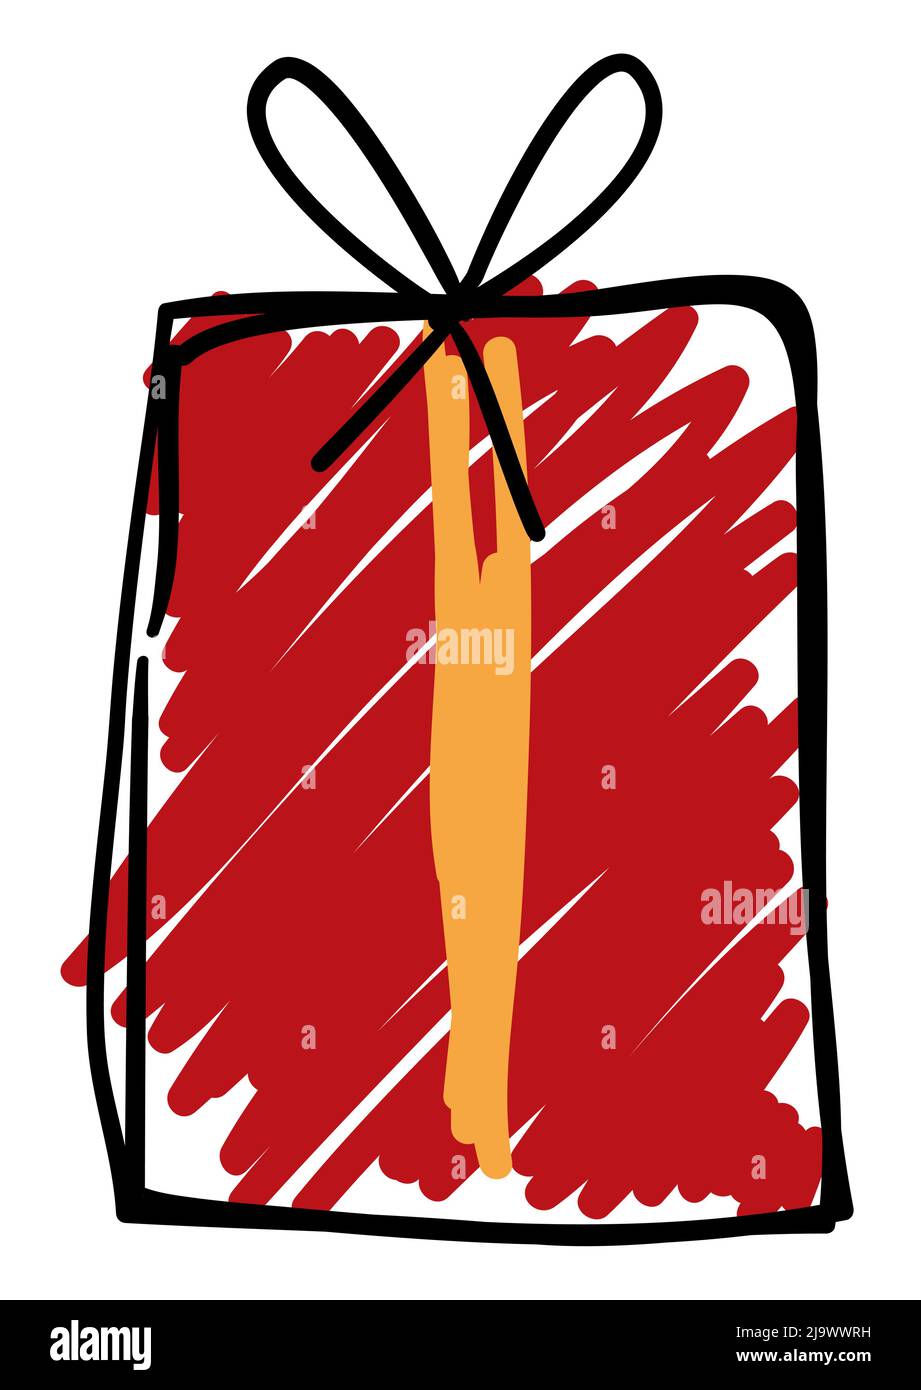 Confezione regalo in stile doodle, colorata con pennarello rosso e giallo. Illustrazione Vettoriale